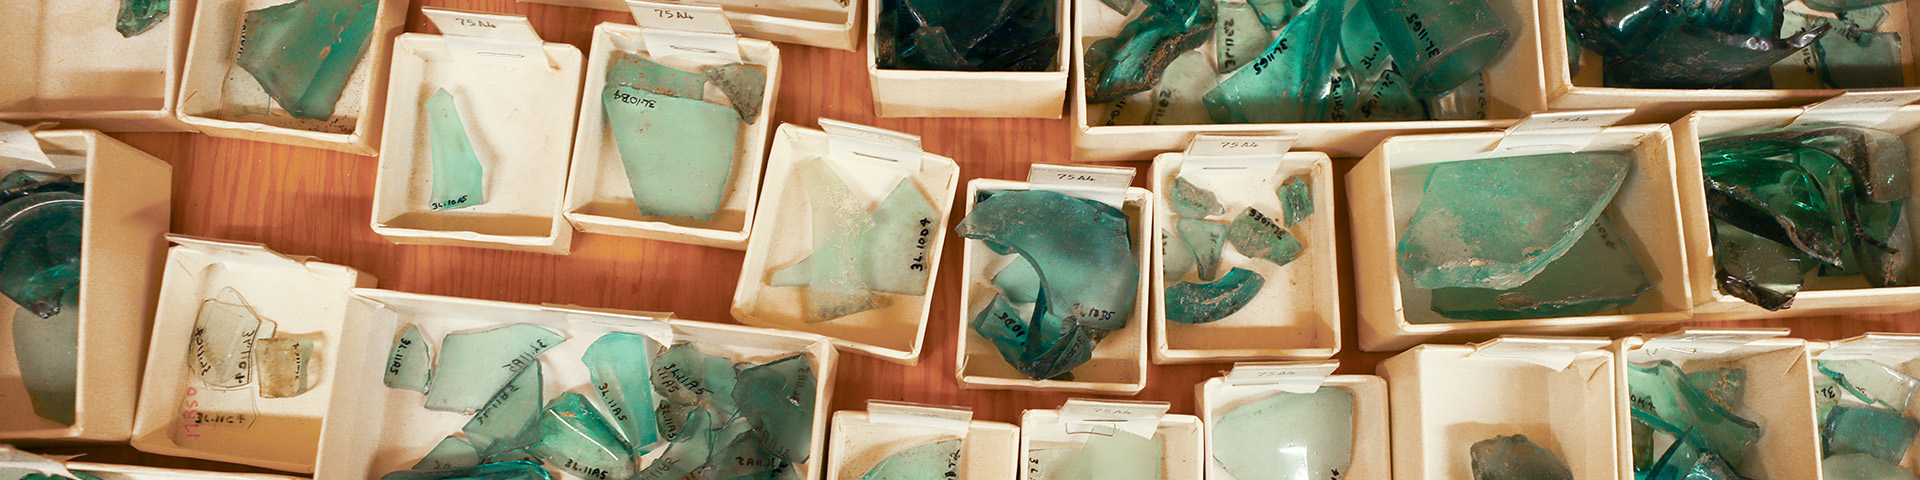 vue aérienne d'objets en verre turquoise mis en boîte dans une collection